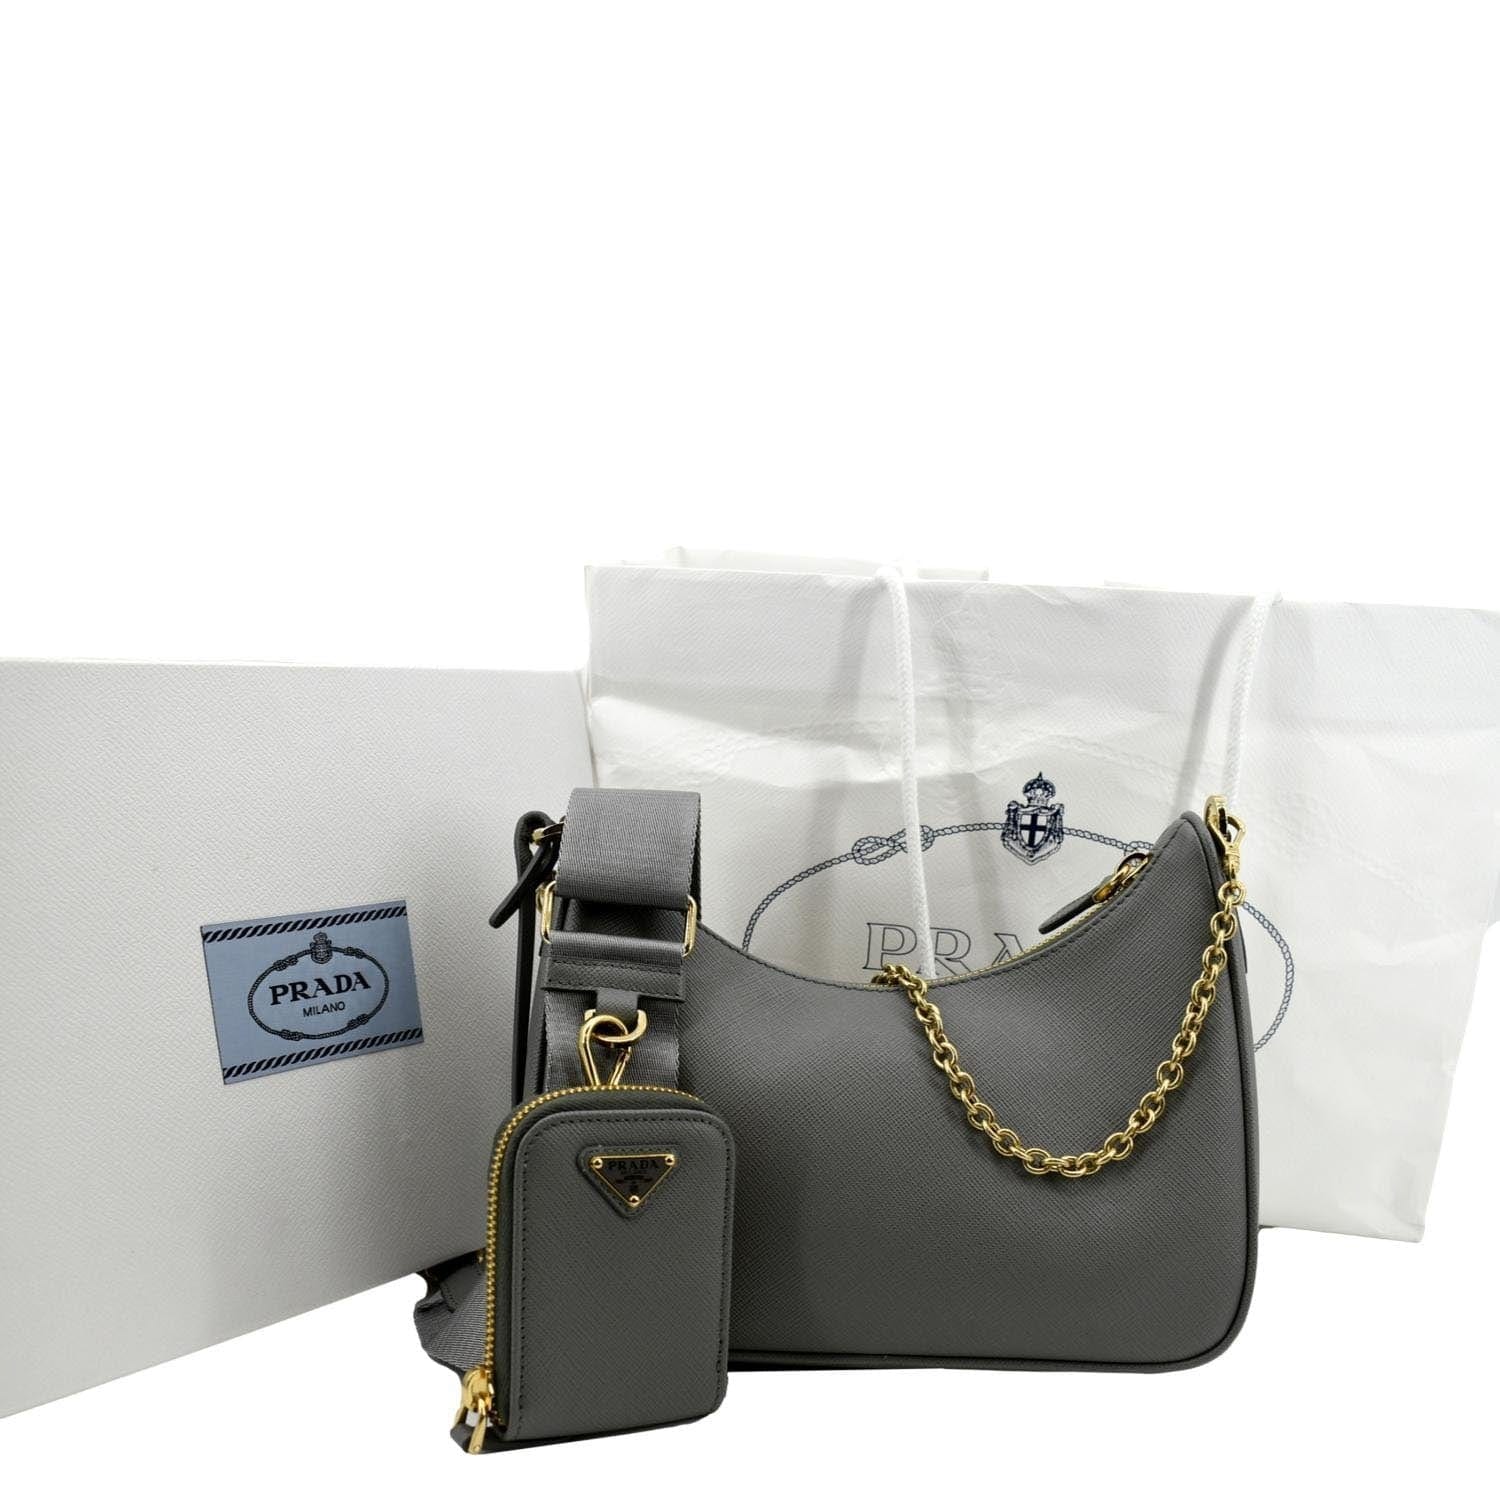 Prada Re-Edition 2005 leather shoulder bag - ShopStyle